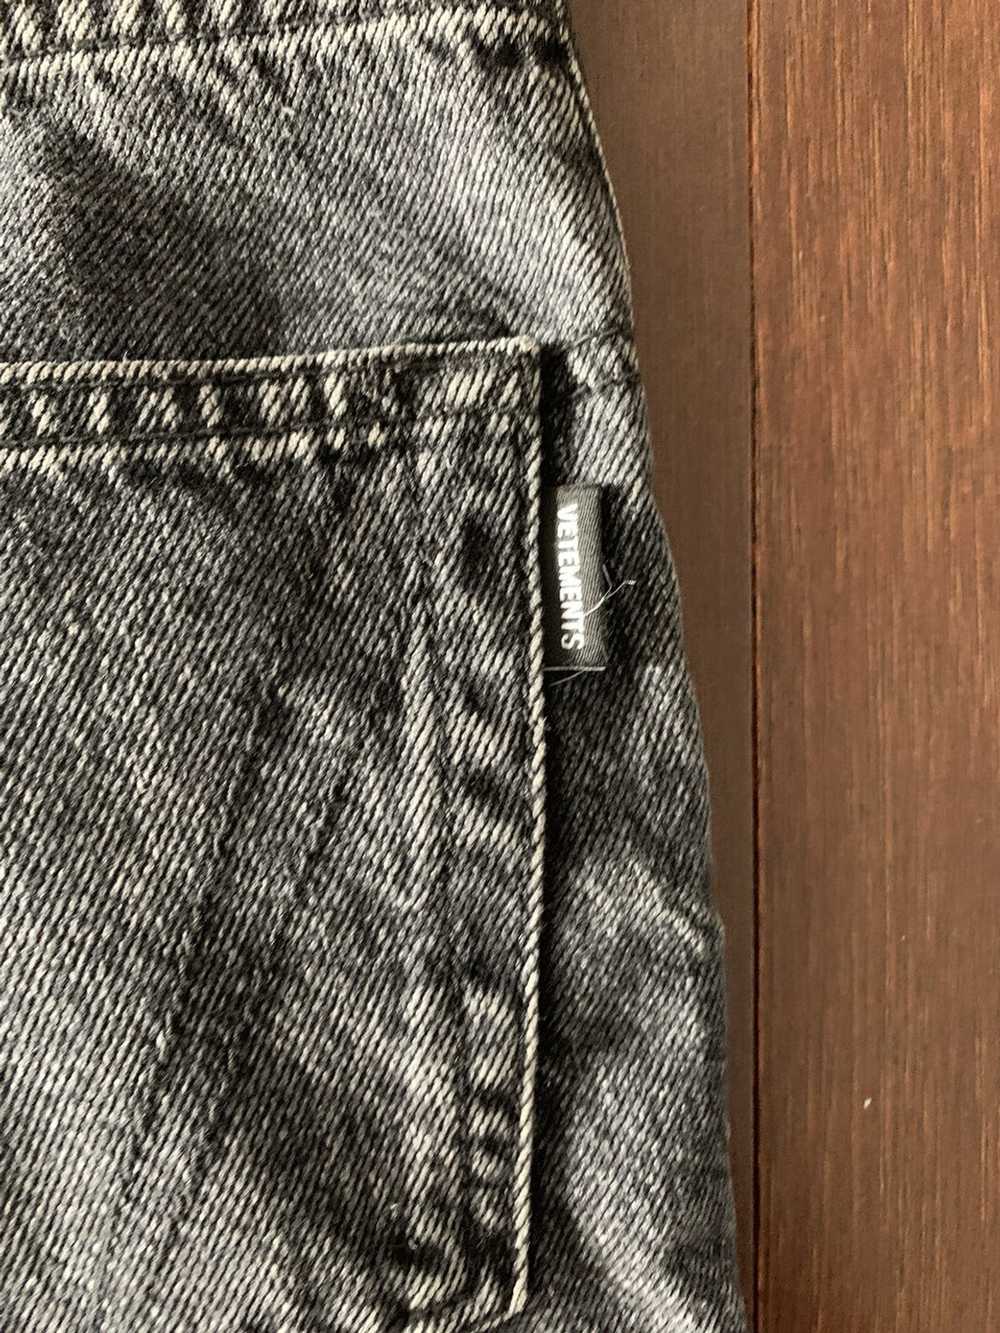 Vetements Vetements zipper jeans - image 7